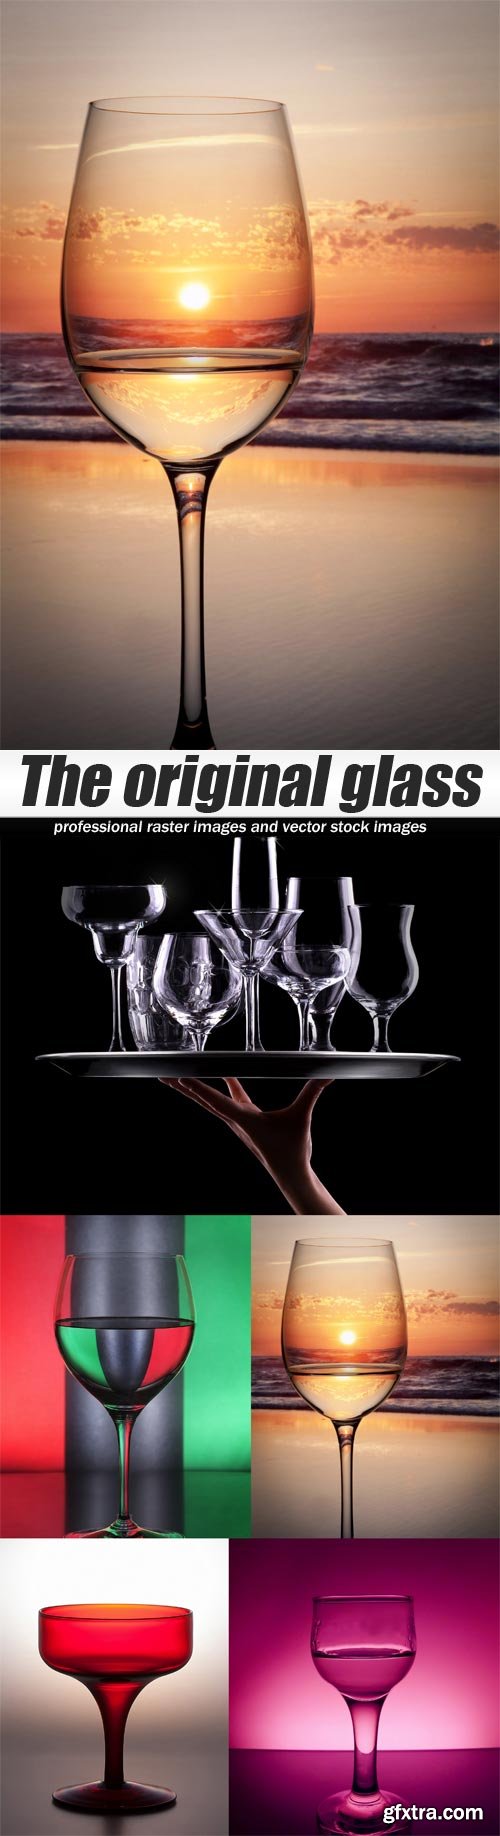 The original glass